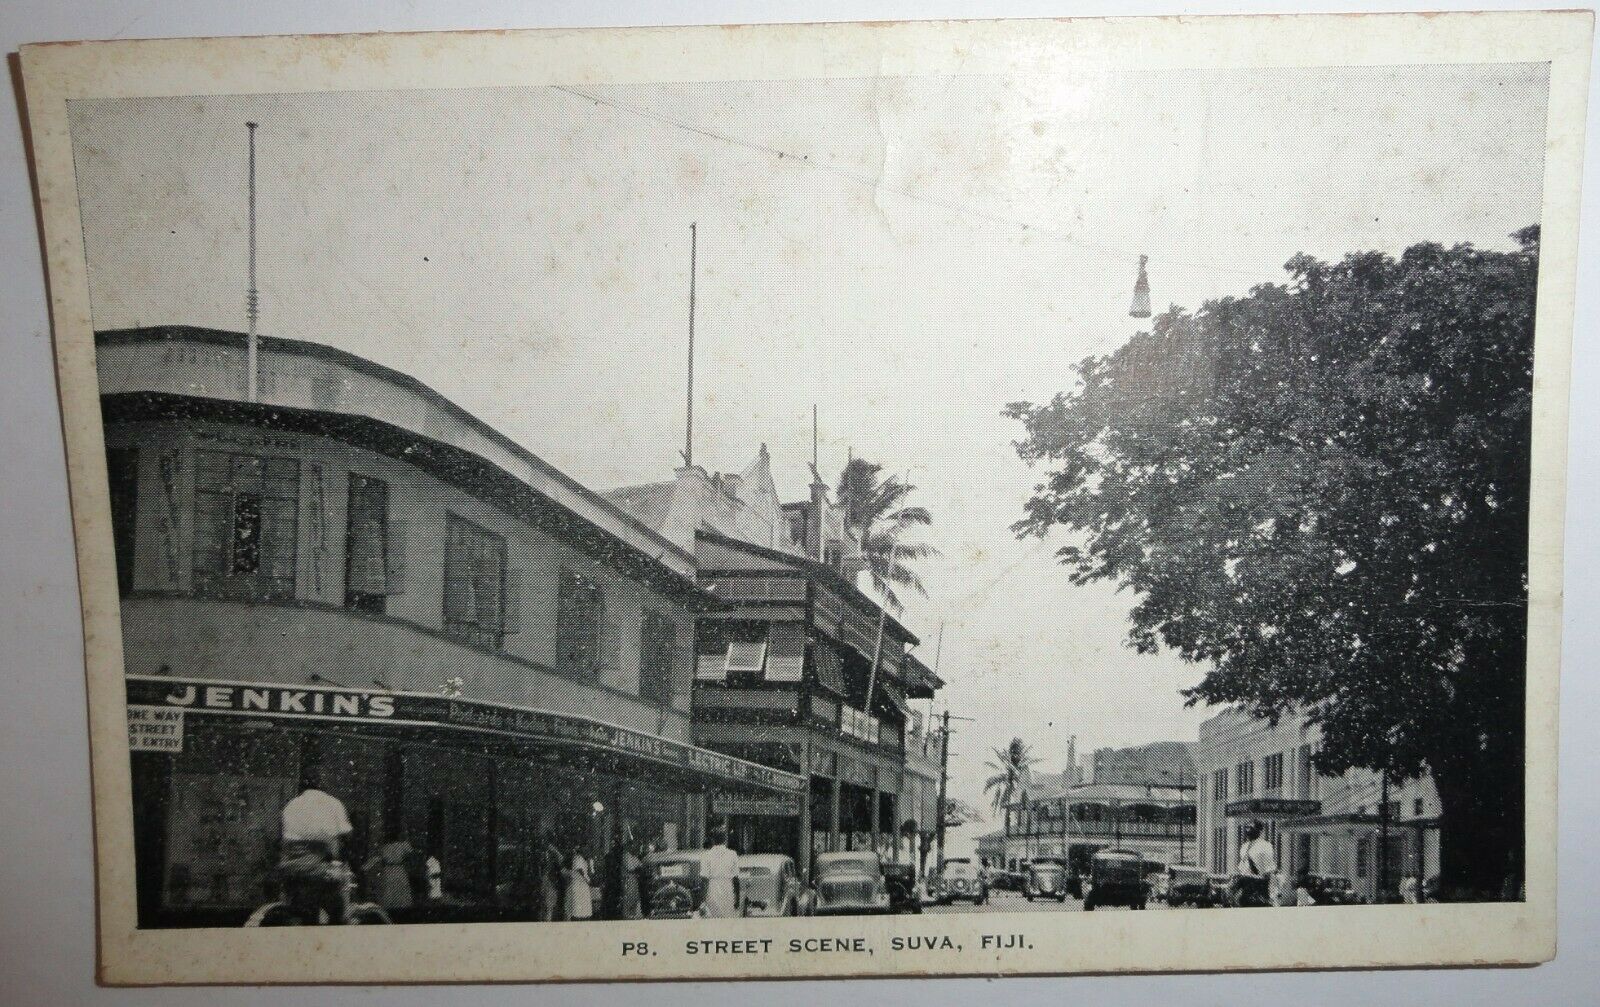 Vintage Postcard - Street Scene - Suva Fiji - Jenkins Store - Unposted